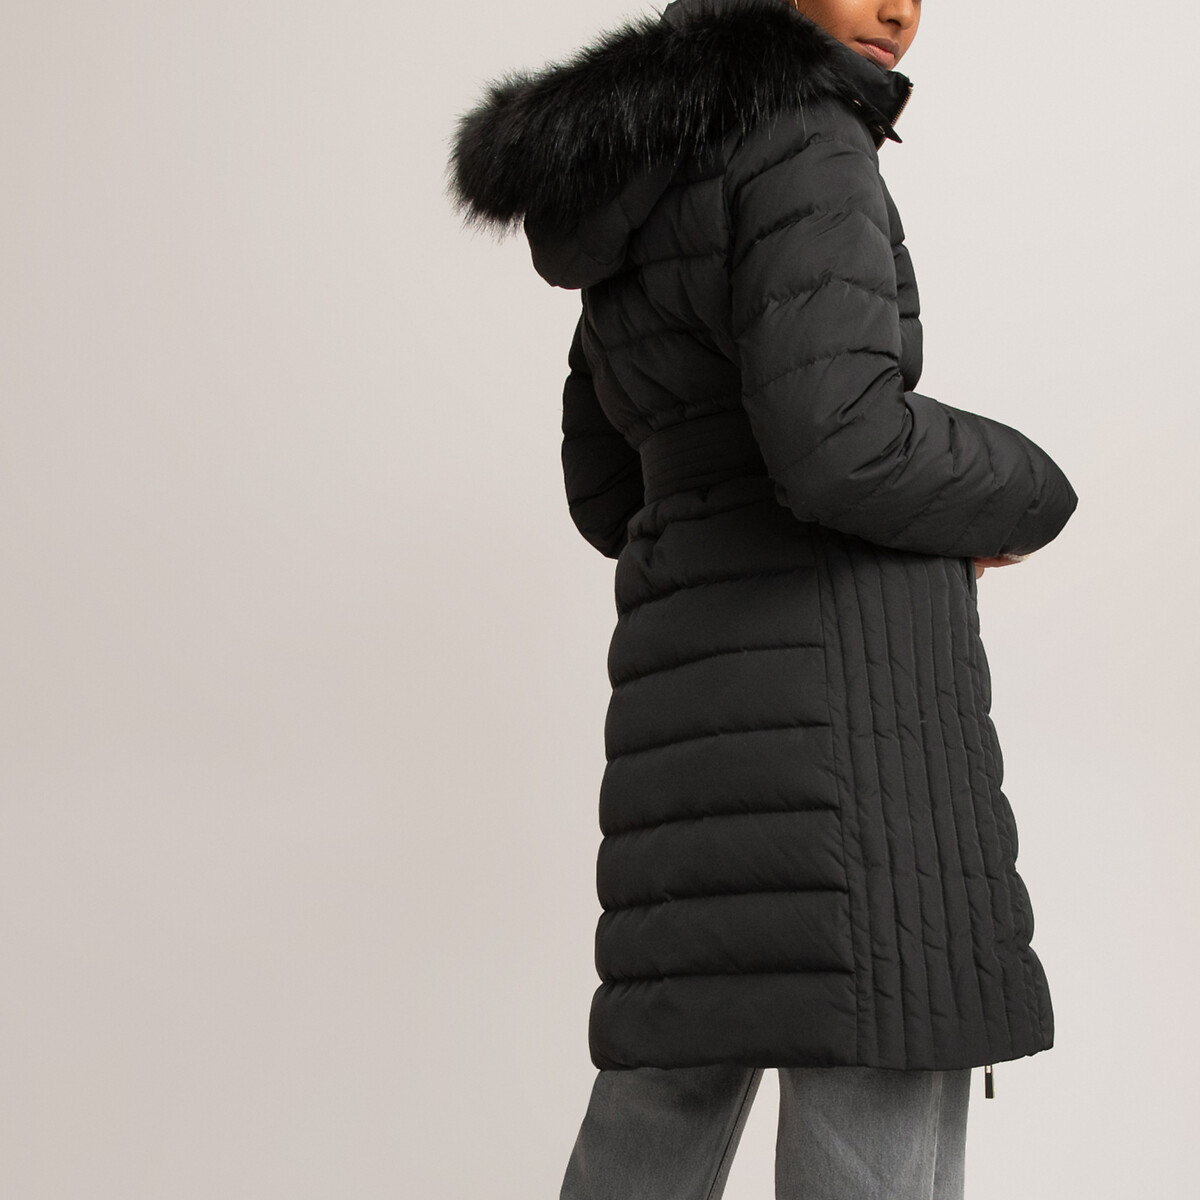 Куртка La Redoute Стеганая длинная с капюшоном и ремешком 50 (FR) - 56 (RUS) черный, размер 50 (FR) - 56 (RUS)